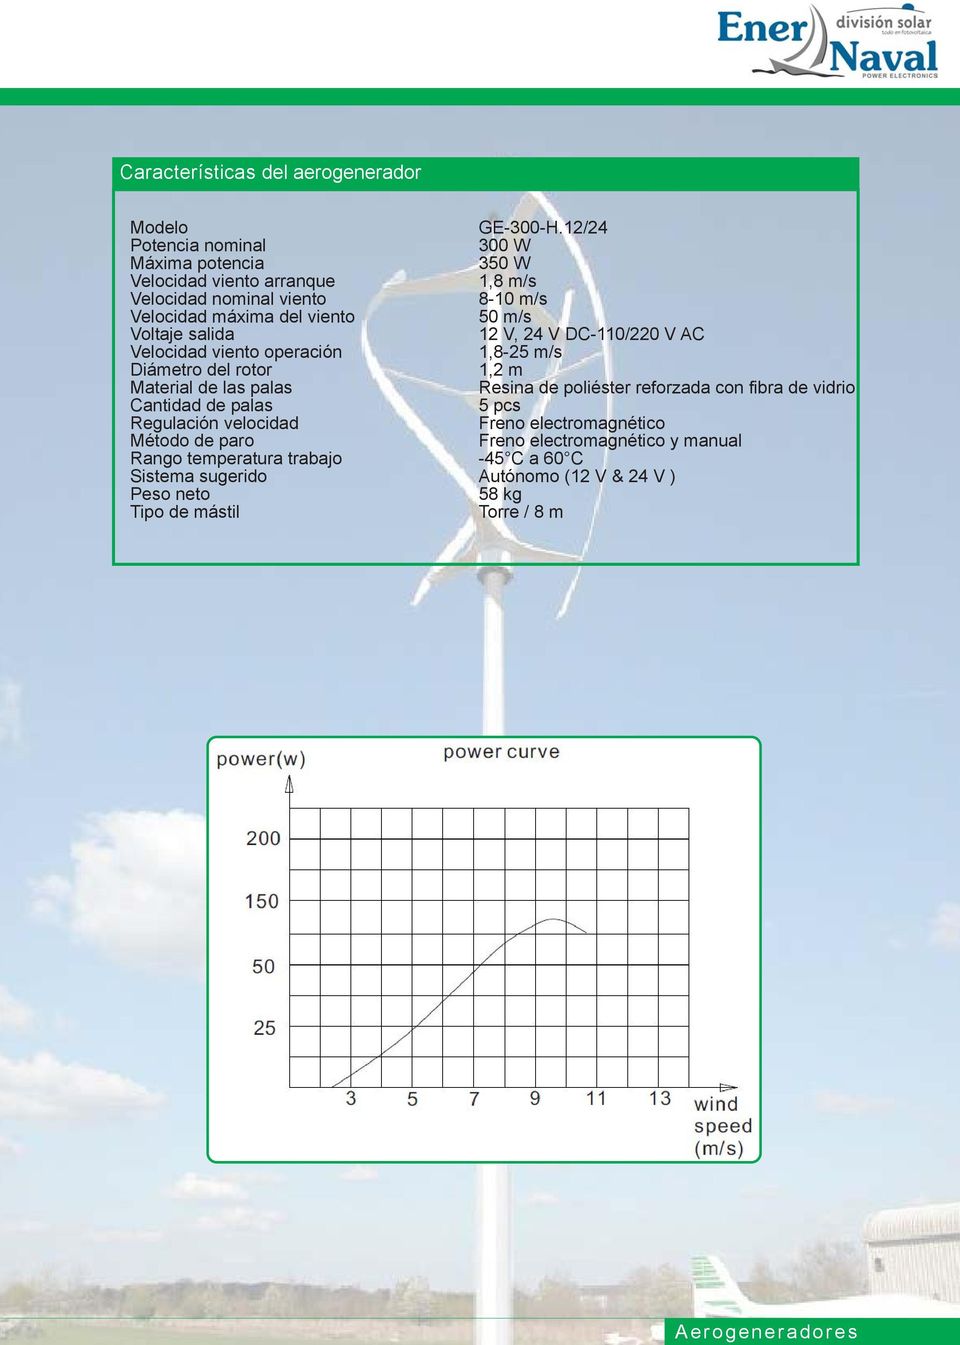 m/s Voltaje salida 12 V, 24 V DC-110/220 V AC Velocidad viento operación 1,8-25 m/s Diámetro del rotor 1,2 m Material de las palas Resina de poliéster